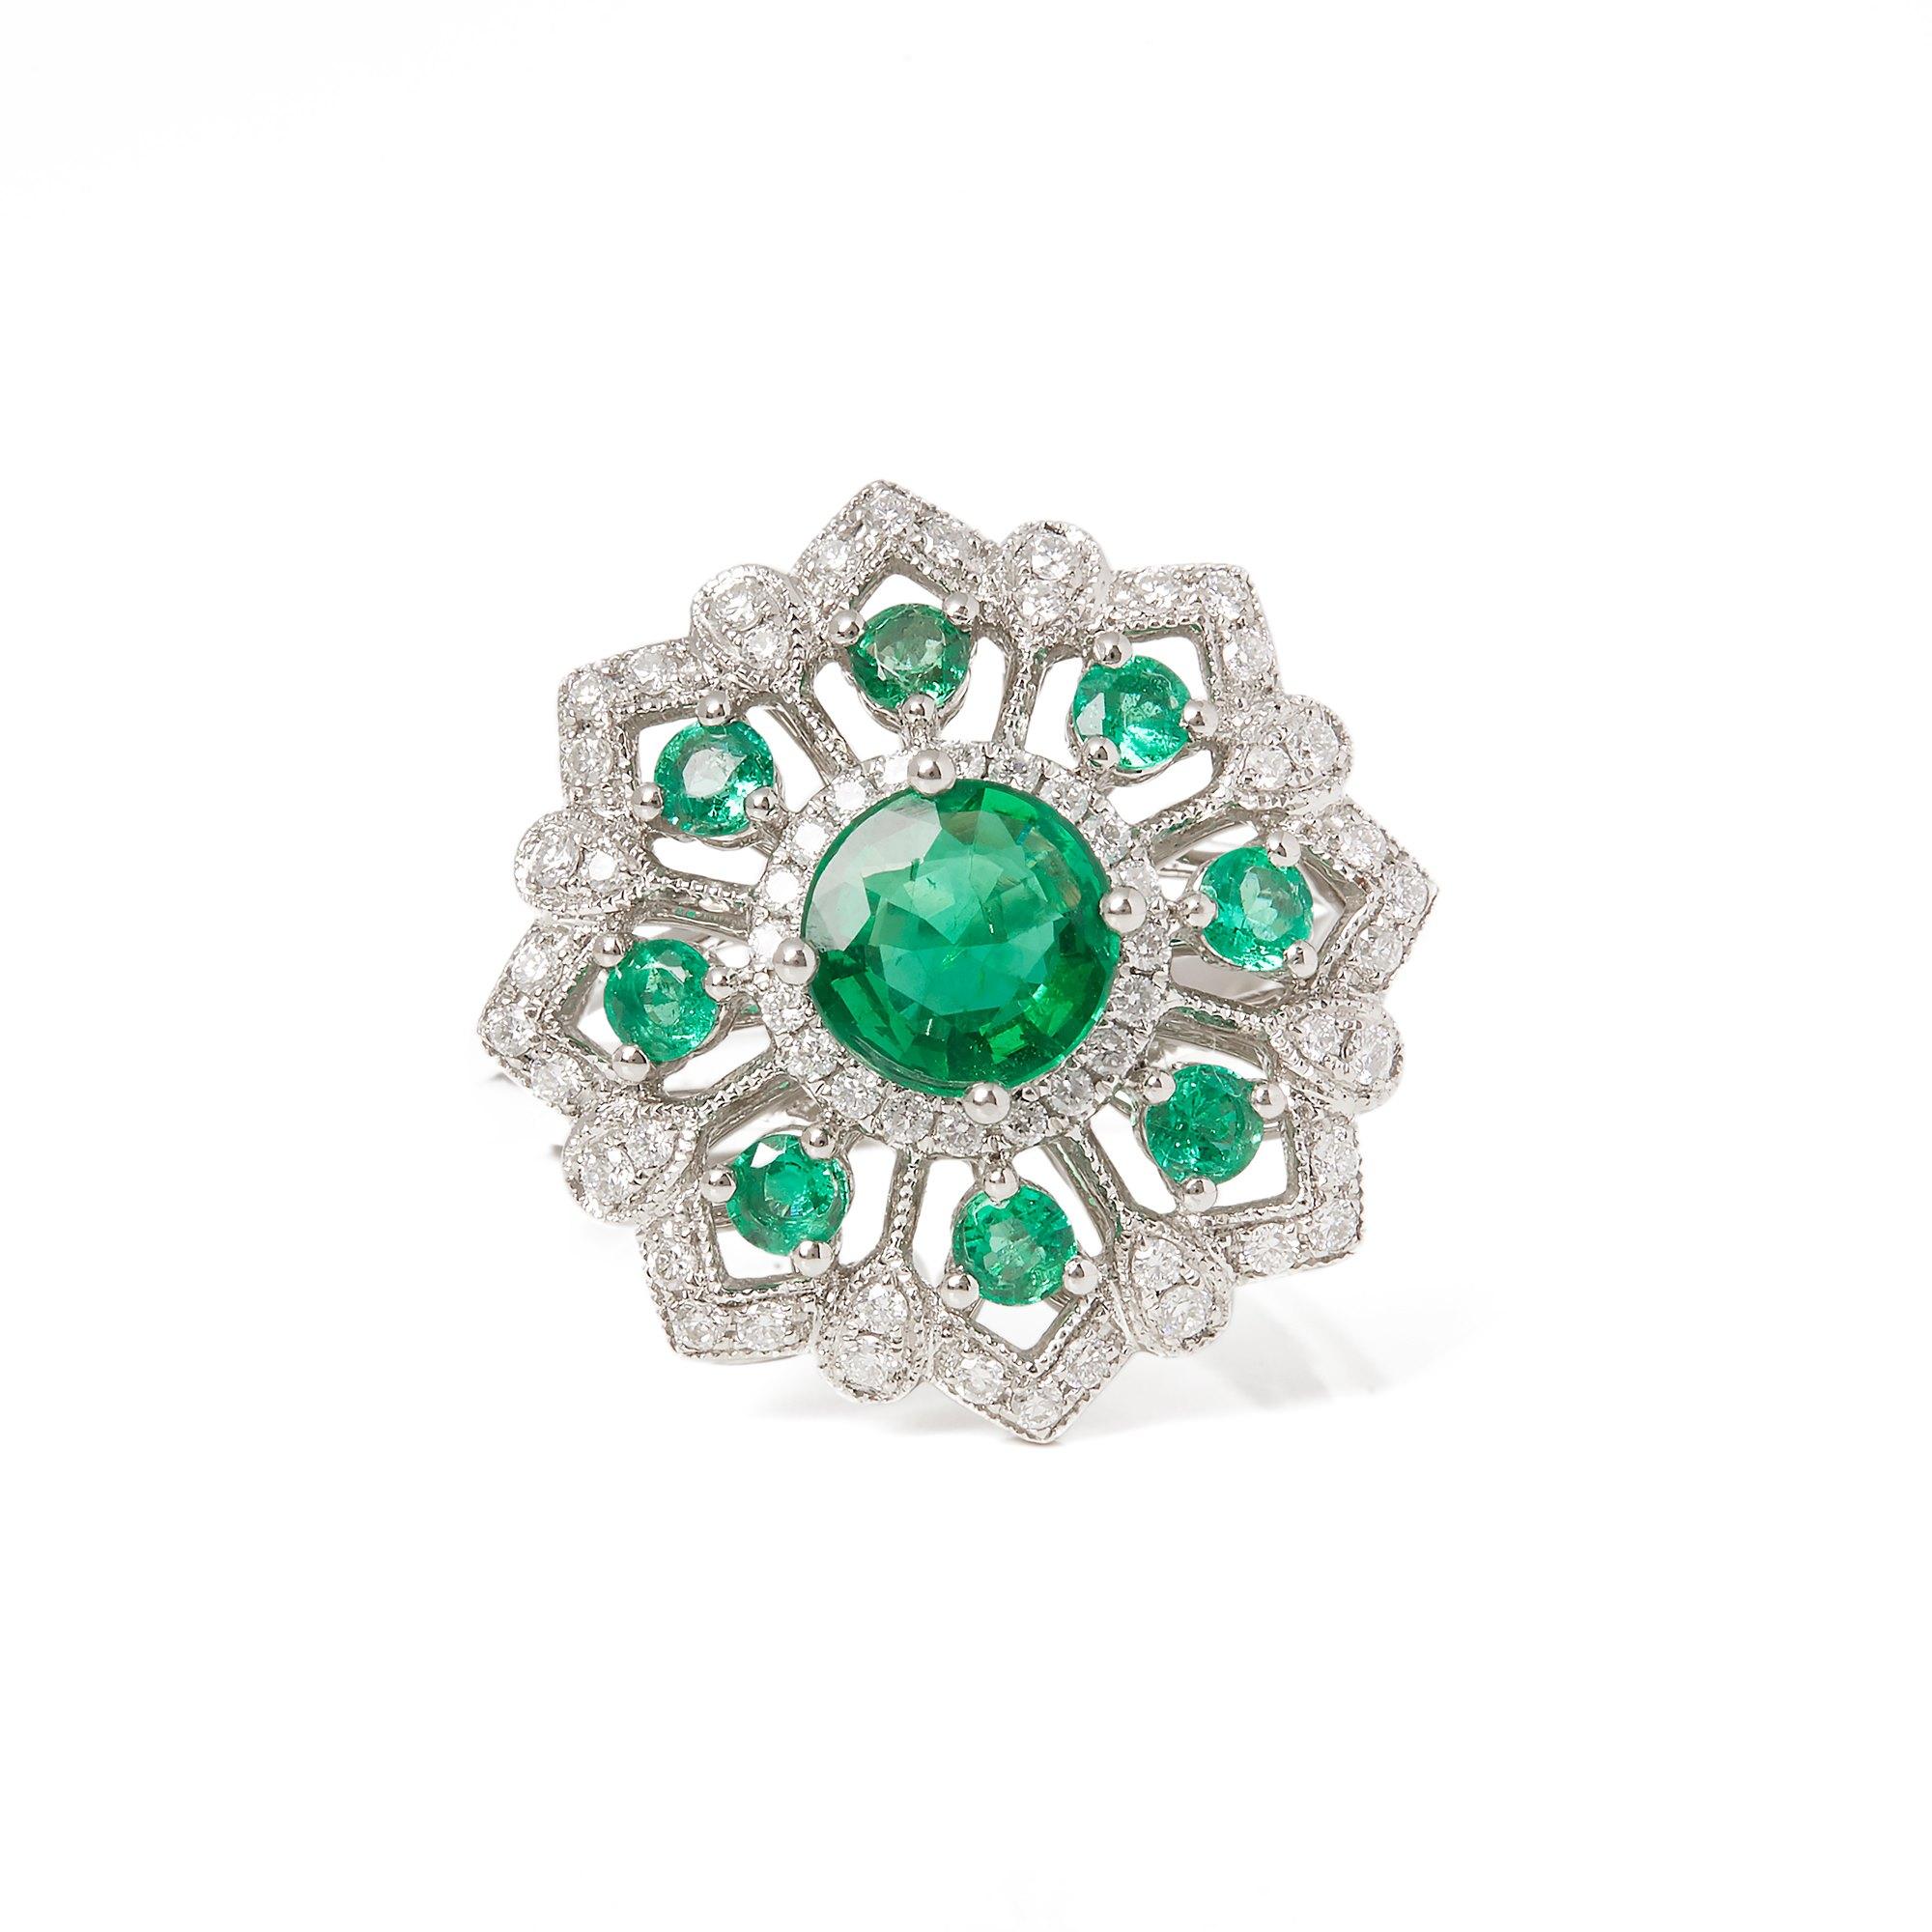 Dieser von David Jerome entworfene Ring stammt aus seiner Privatsammlung und enthält einen Smaragd im Rundschliff mit einem Gesamtgewicht von 1,32 Karat, der in der kolumbianischen Chivor-Mine gewonnen wurde. Mit runden Diamanten im Brillantschliff